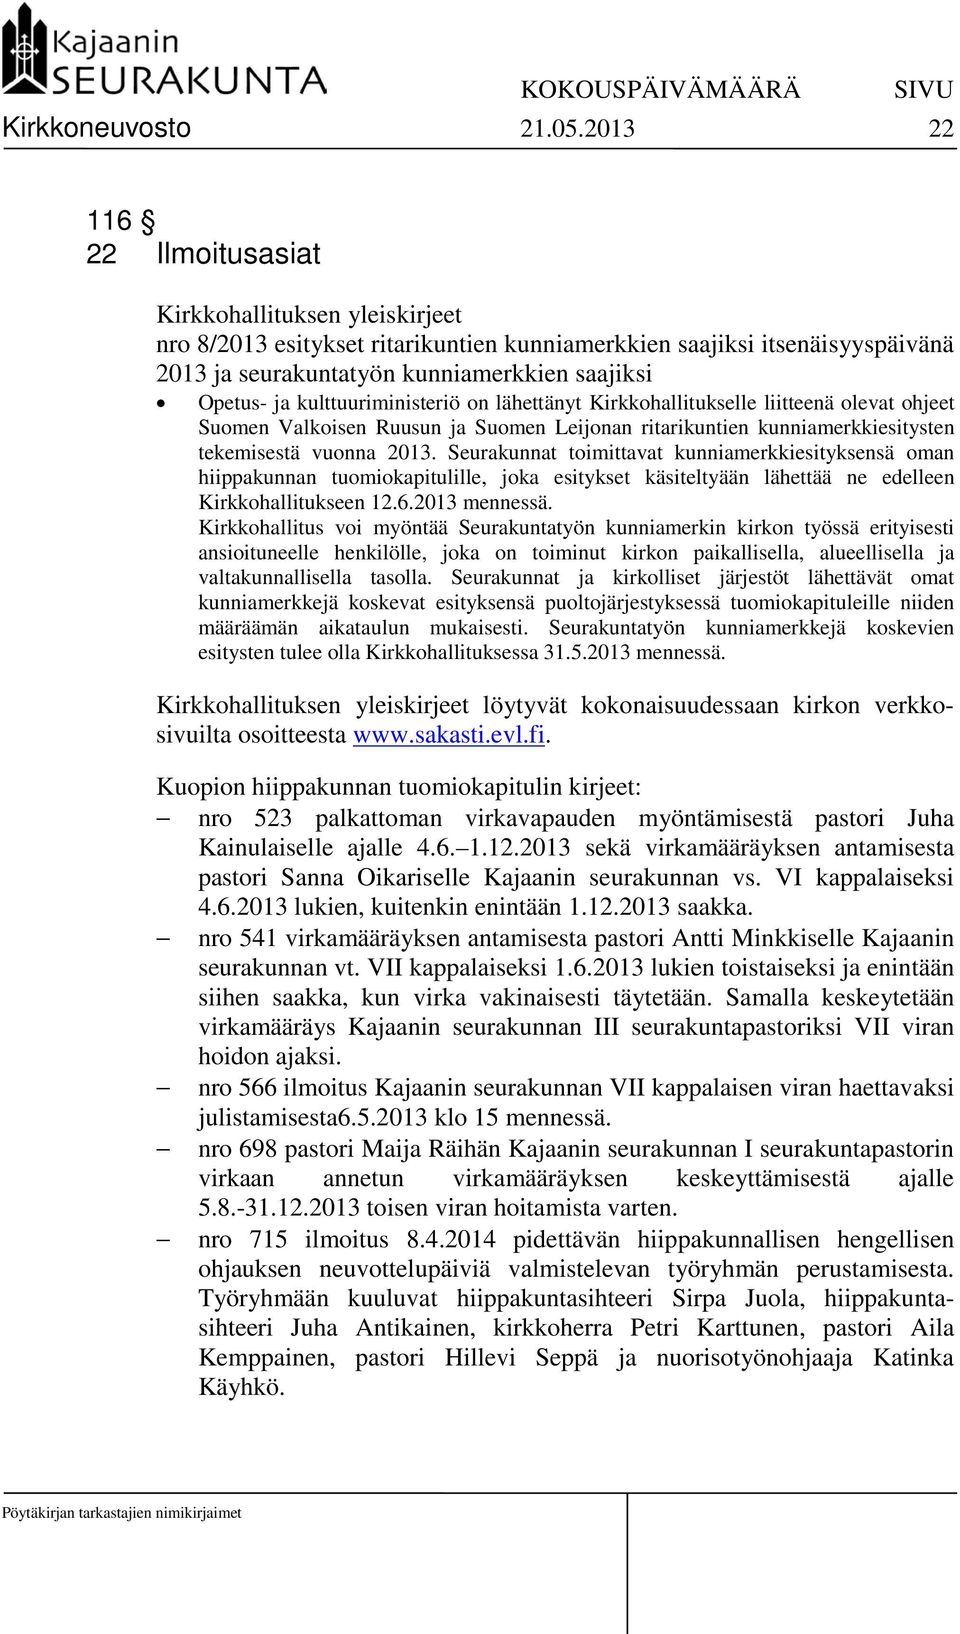 kulttuuriministeriö on lähettänyt Kirkkohallitukselle liitteenä olevat ohjeet Suomen Valkoisen Ruusun ja Suomen Leijonan ritarikuntien kunniamerkkiesitysten tekemisestä vuonna 2013.